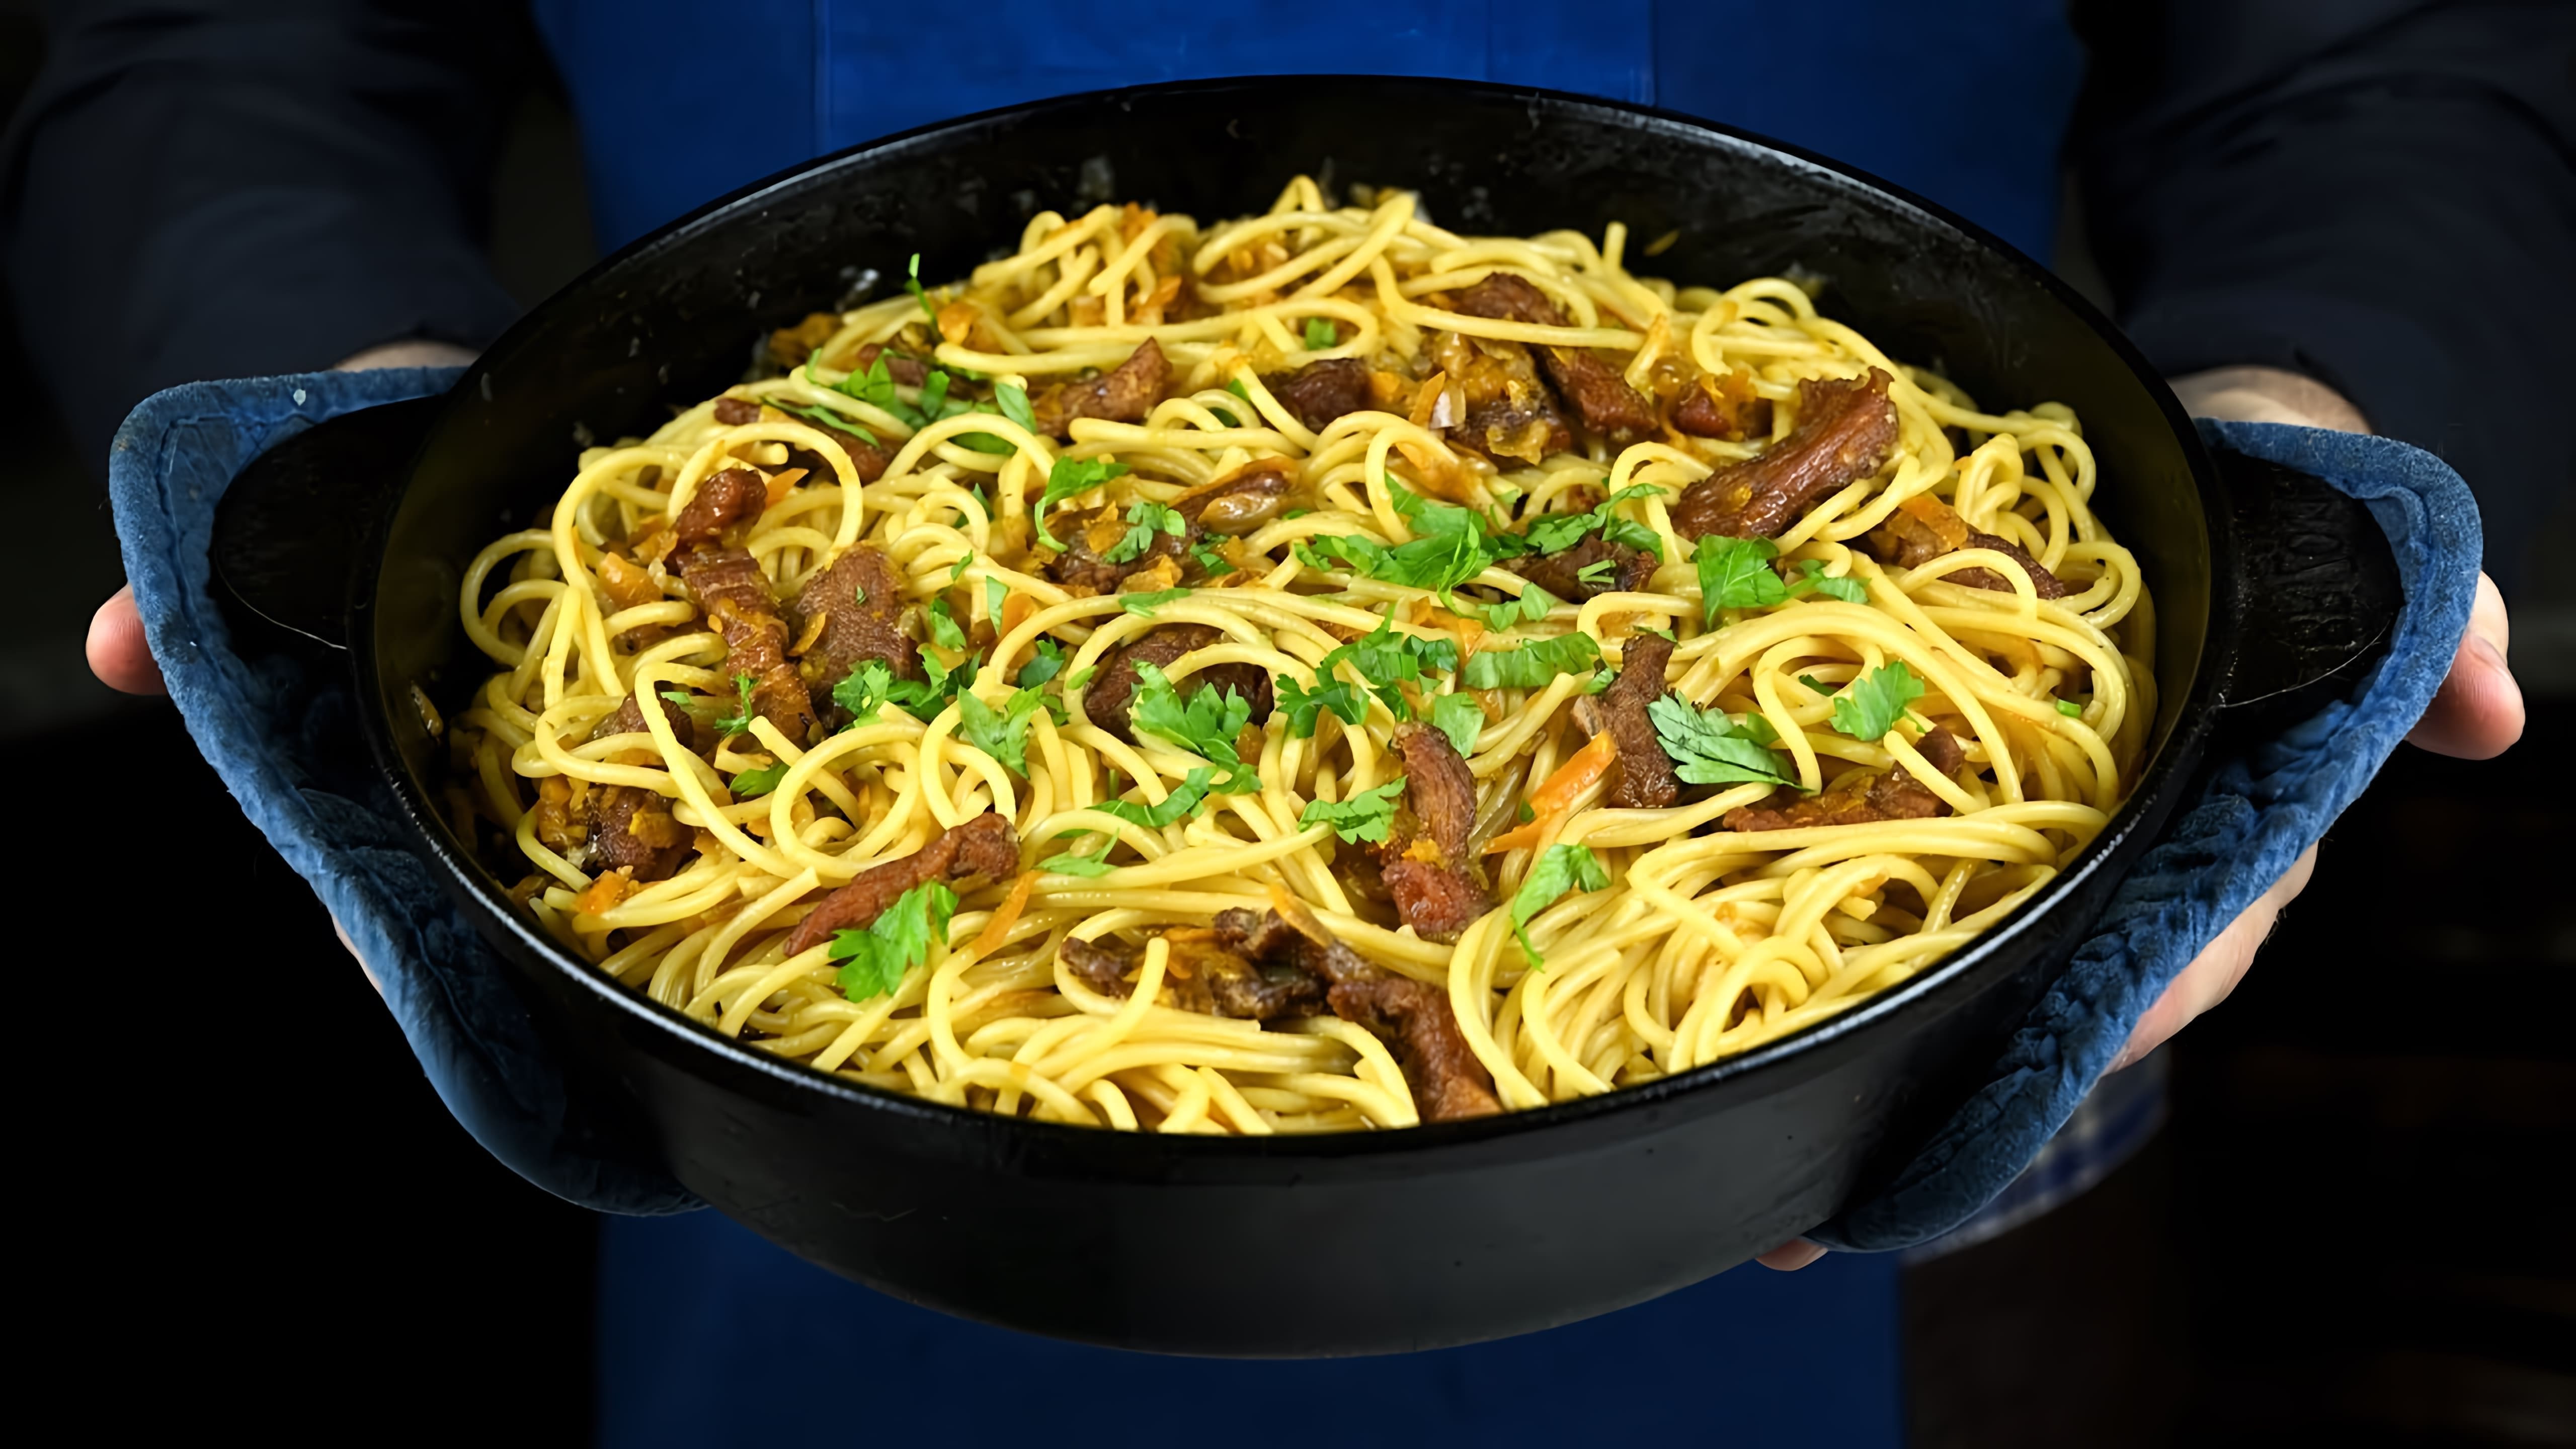 В этом видео демонстрируется рецепт приготовления спагетти по-узбекски